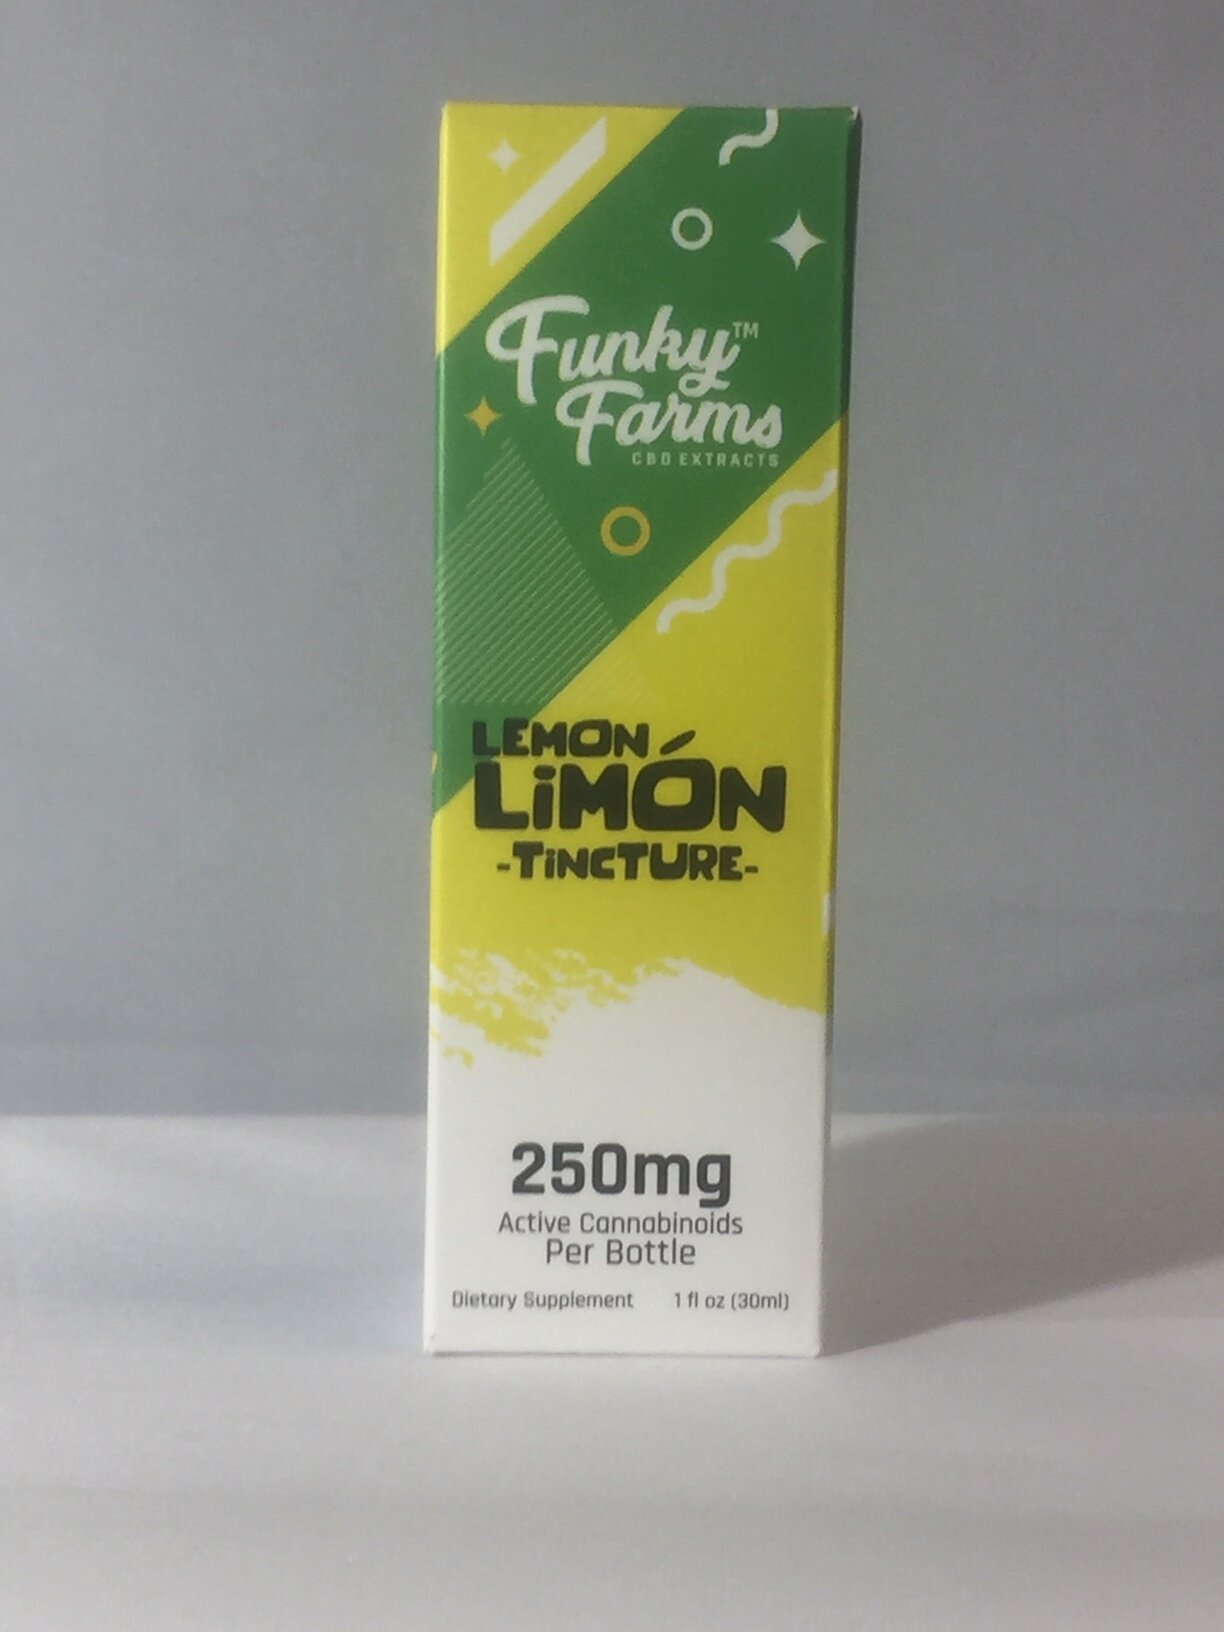 Lemon Tincture for Funky Farms.JPG